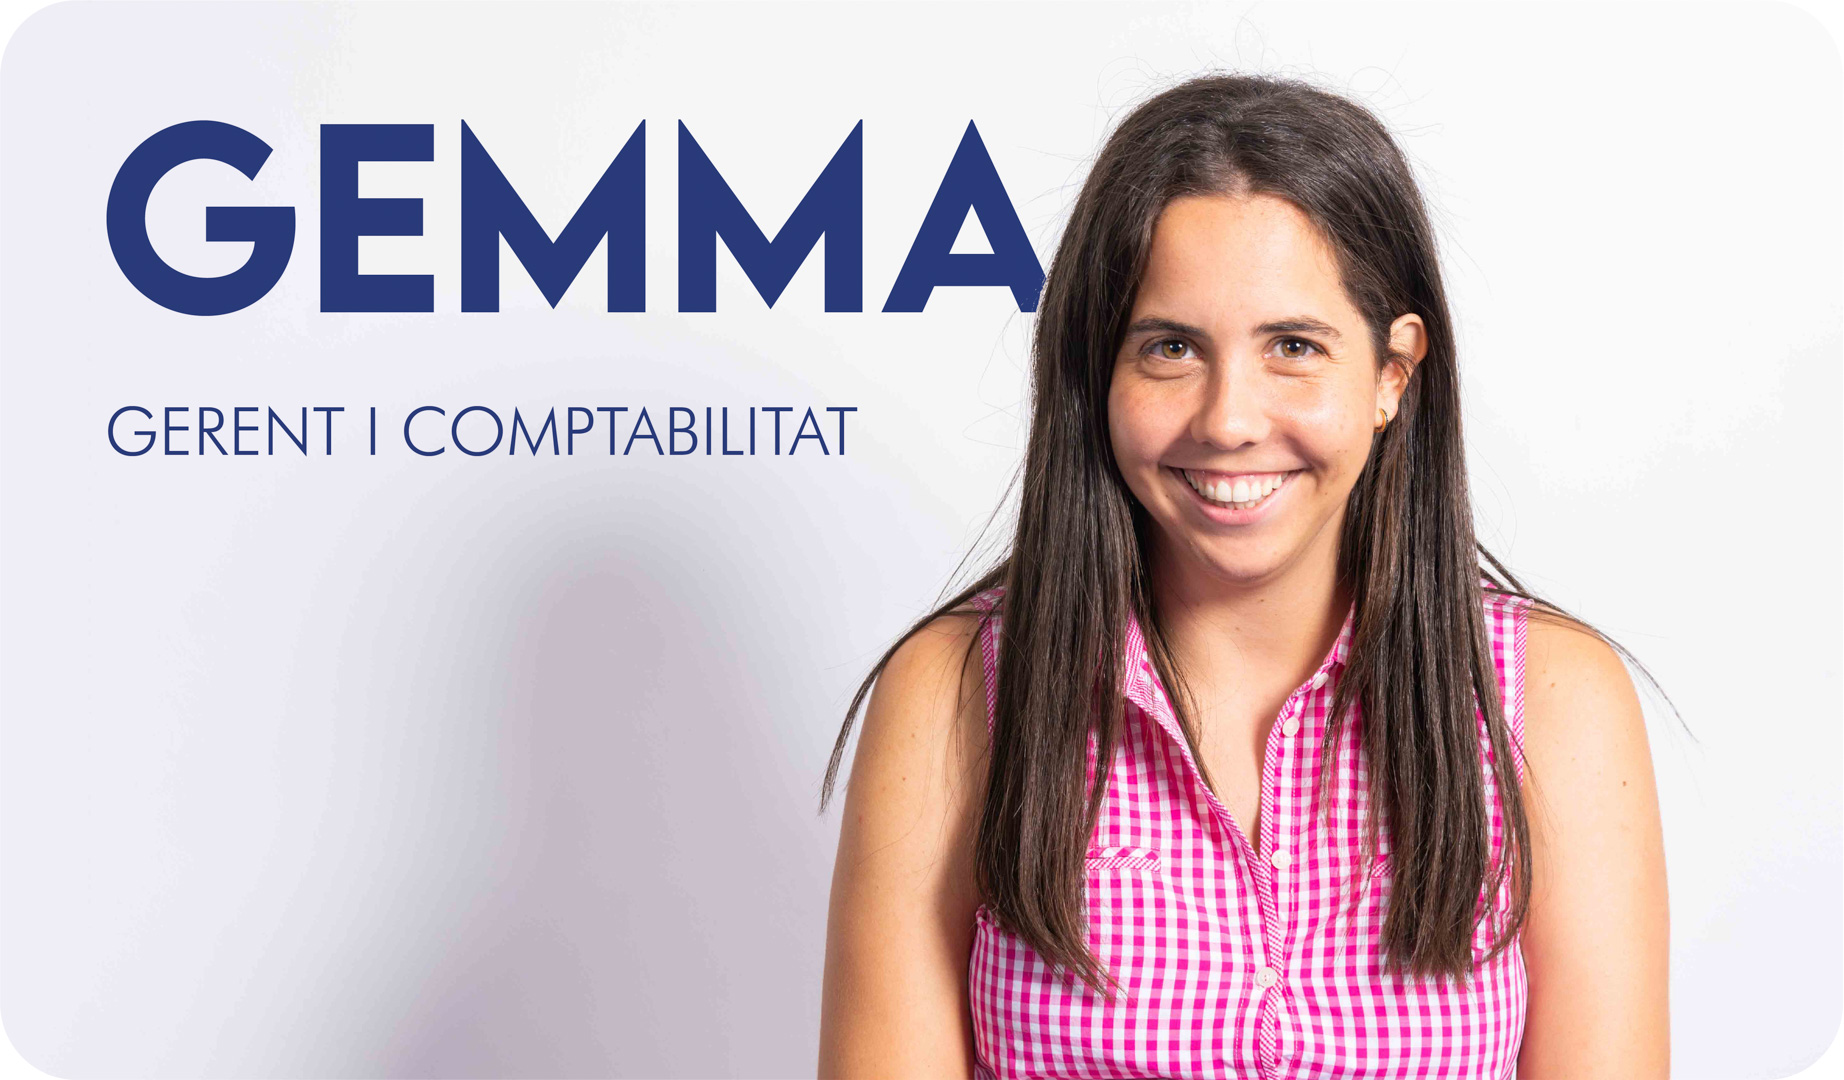 La Gemma, gerent i comptabilitat de l'Autoescola Victor.